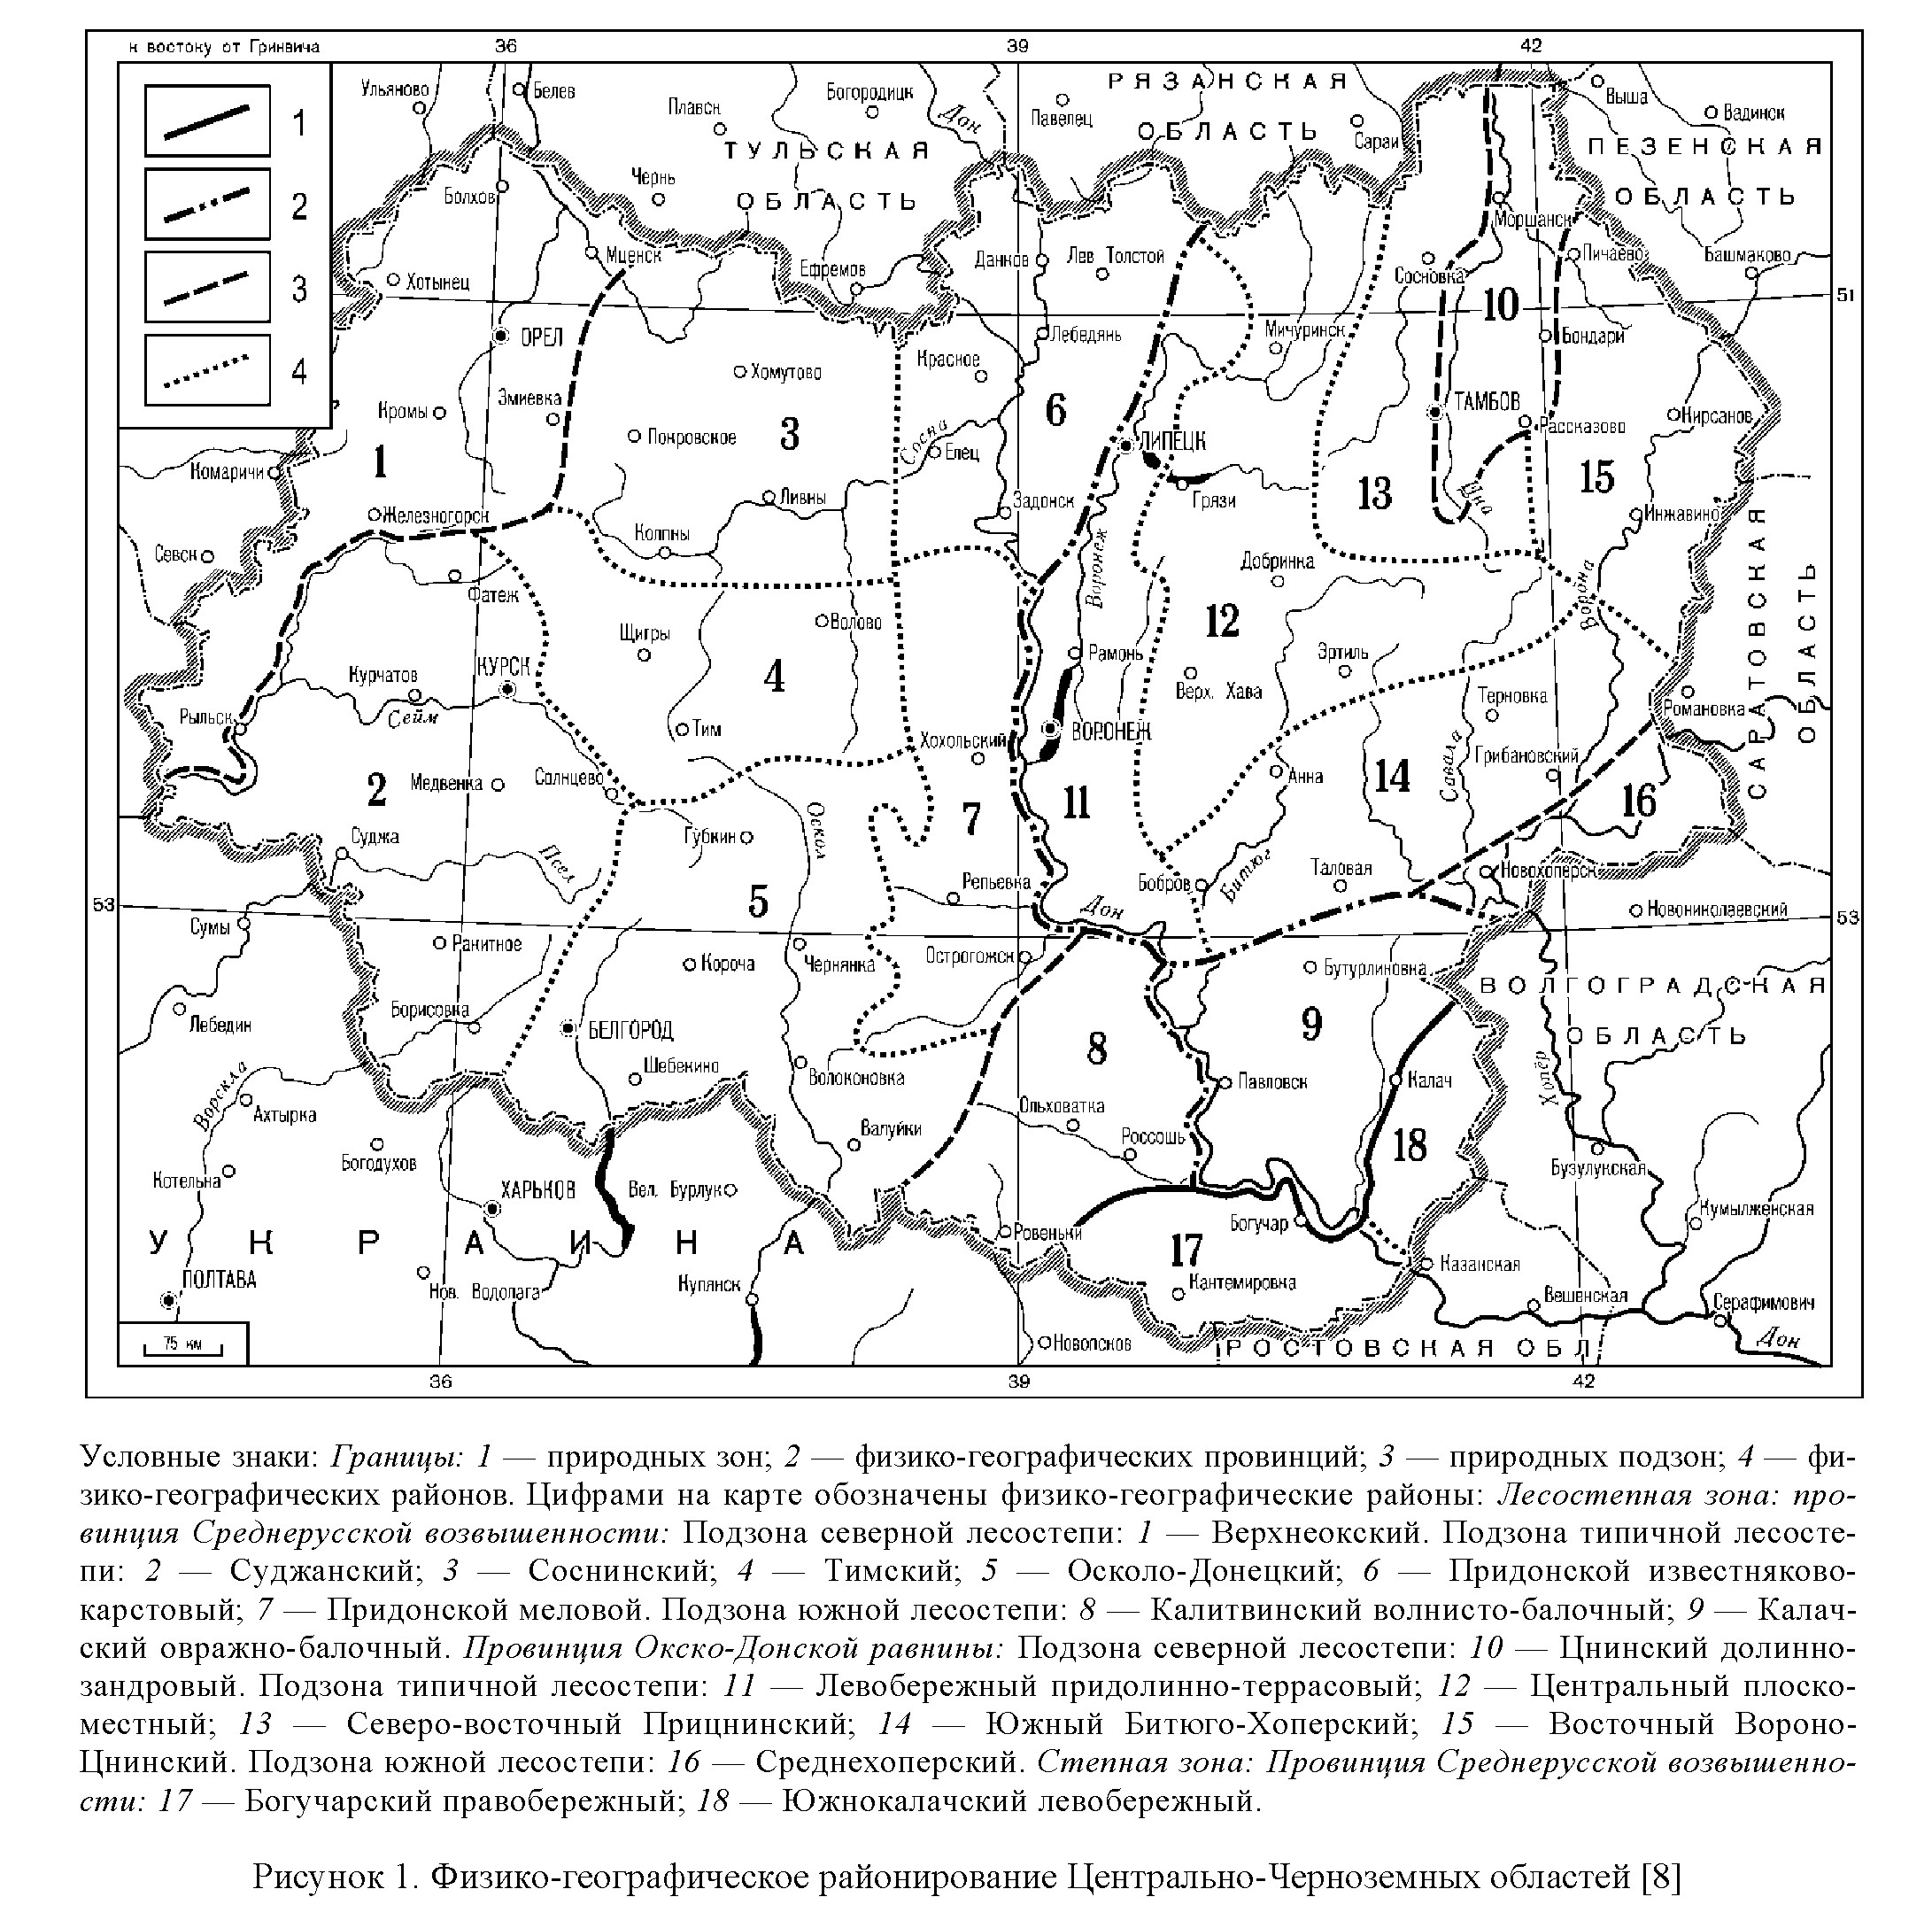 Высотная организация равнинных ландшафтов (на примере Центрального Черноземья России)